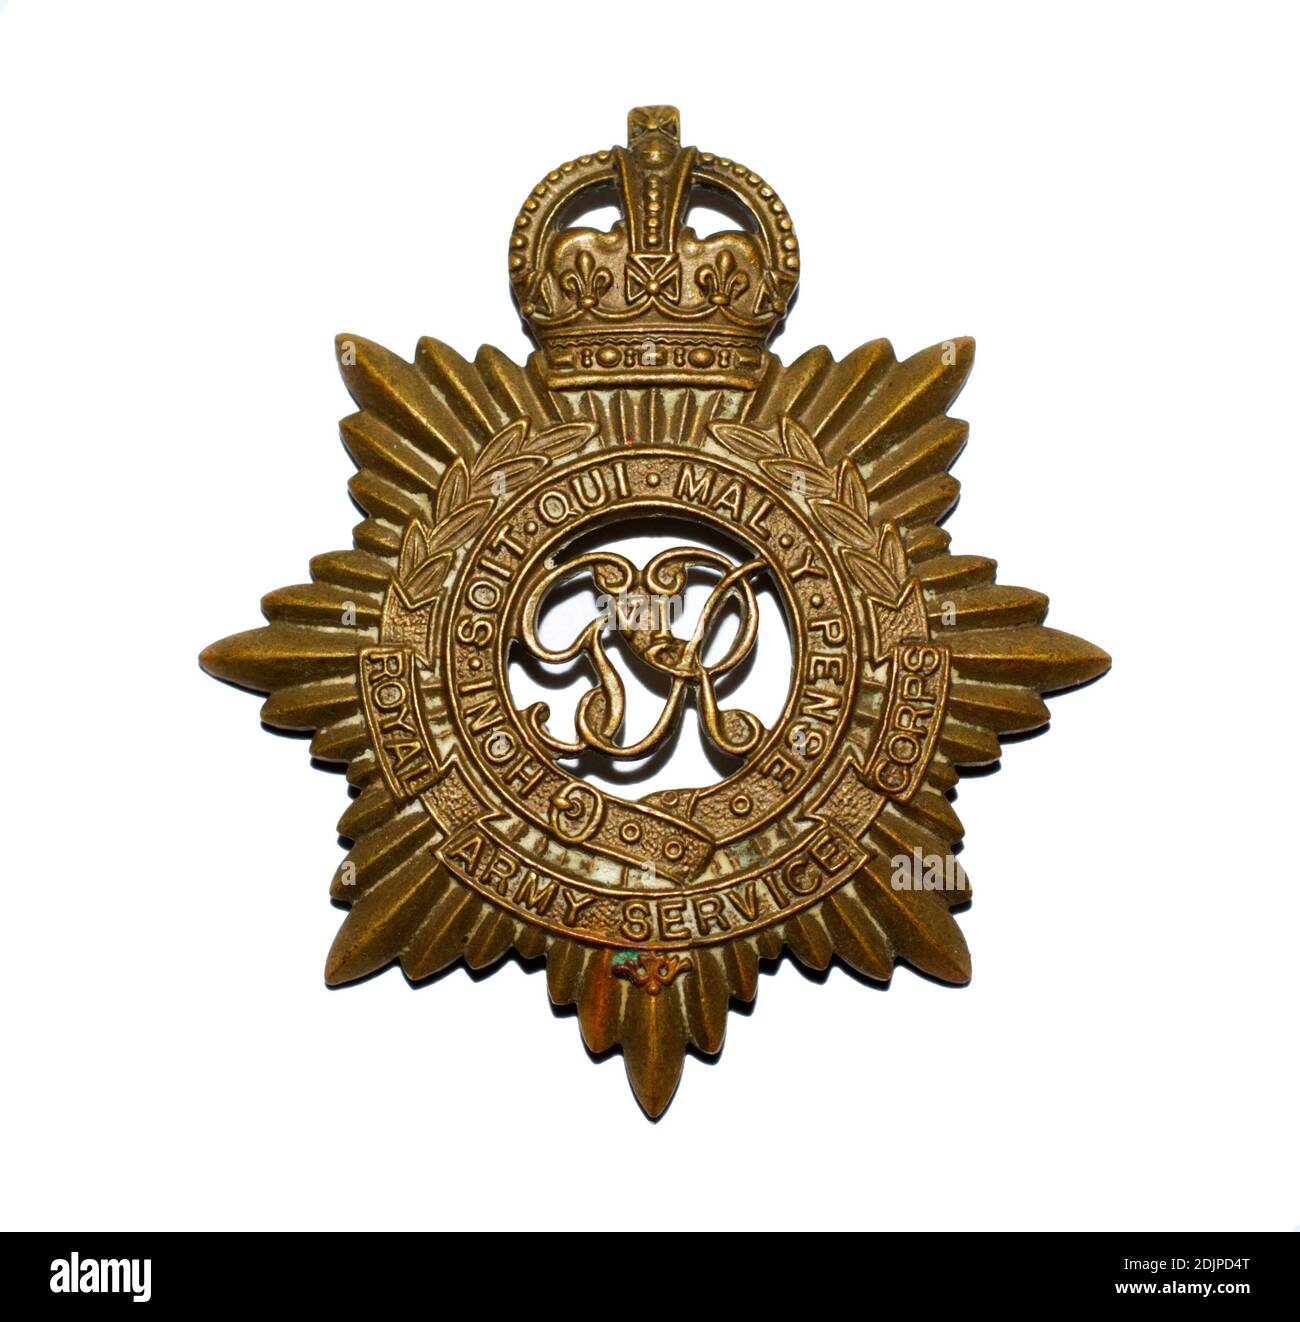 Ein Cap-Abzeichen des Royal Army Service Corps c. 1936-1952. Stockfoto